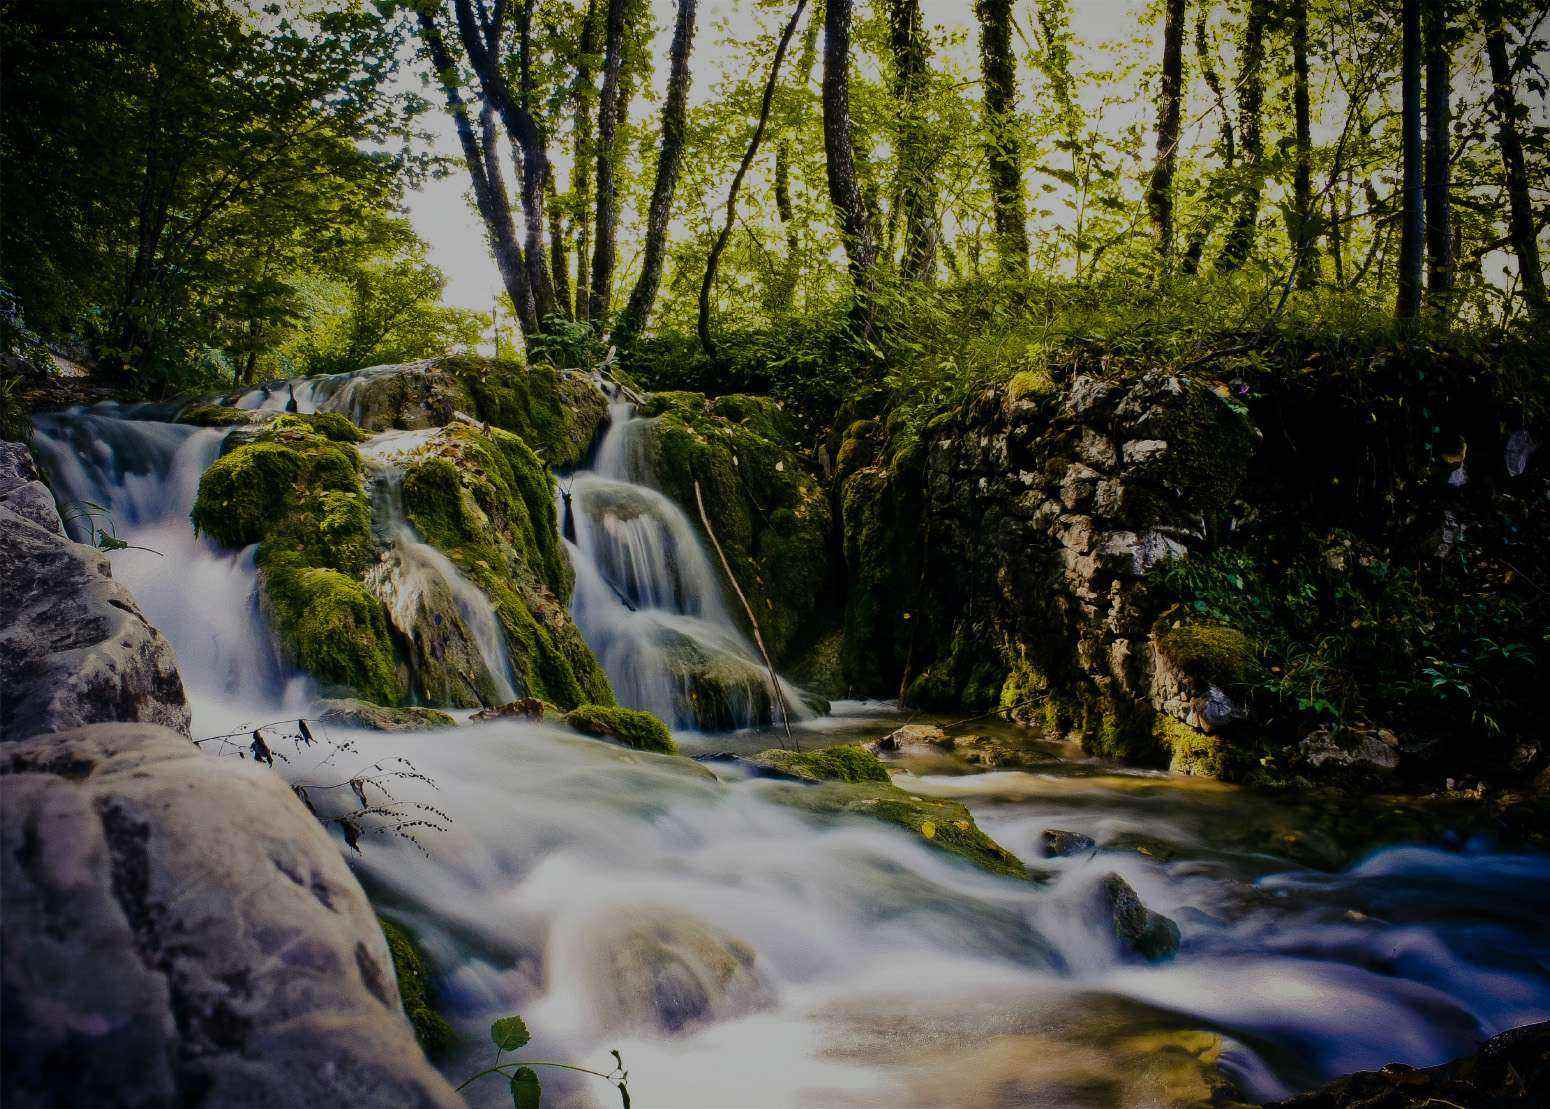 Imagen de un valle donde se ve una cascada de agua rodeada de árboles con hojas verdes, entre cuyas ramas entran los rayos de sol. Todo ello acompañado de una débil niebla.